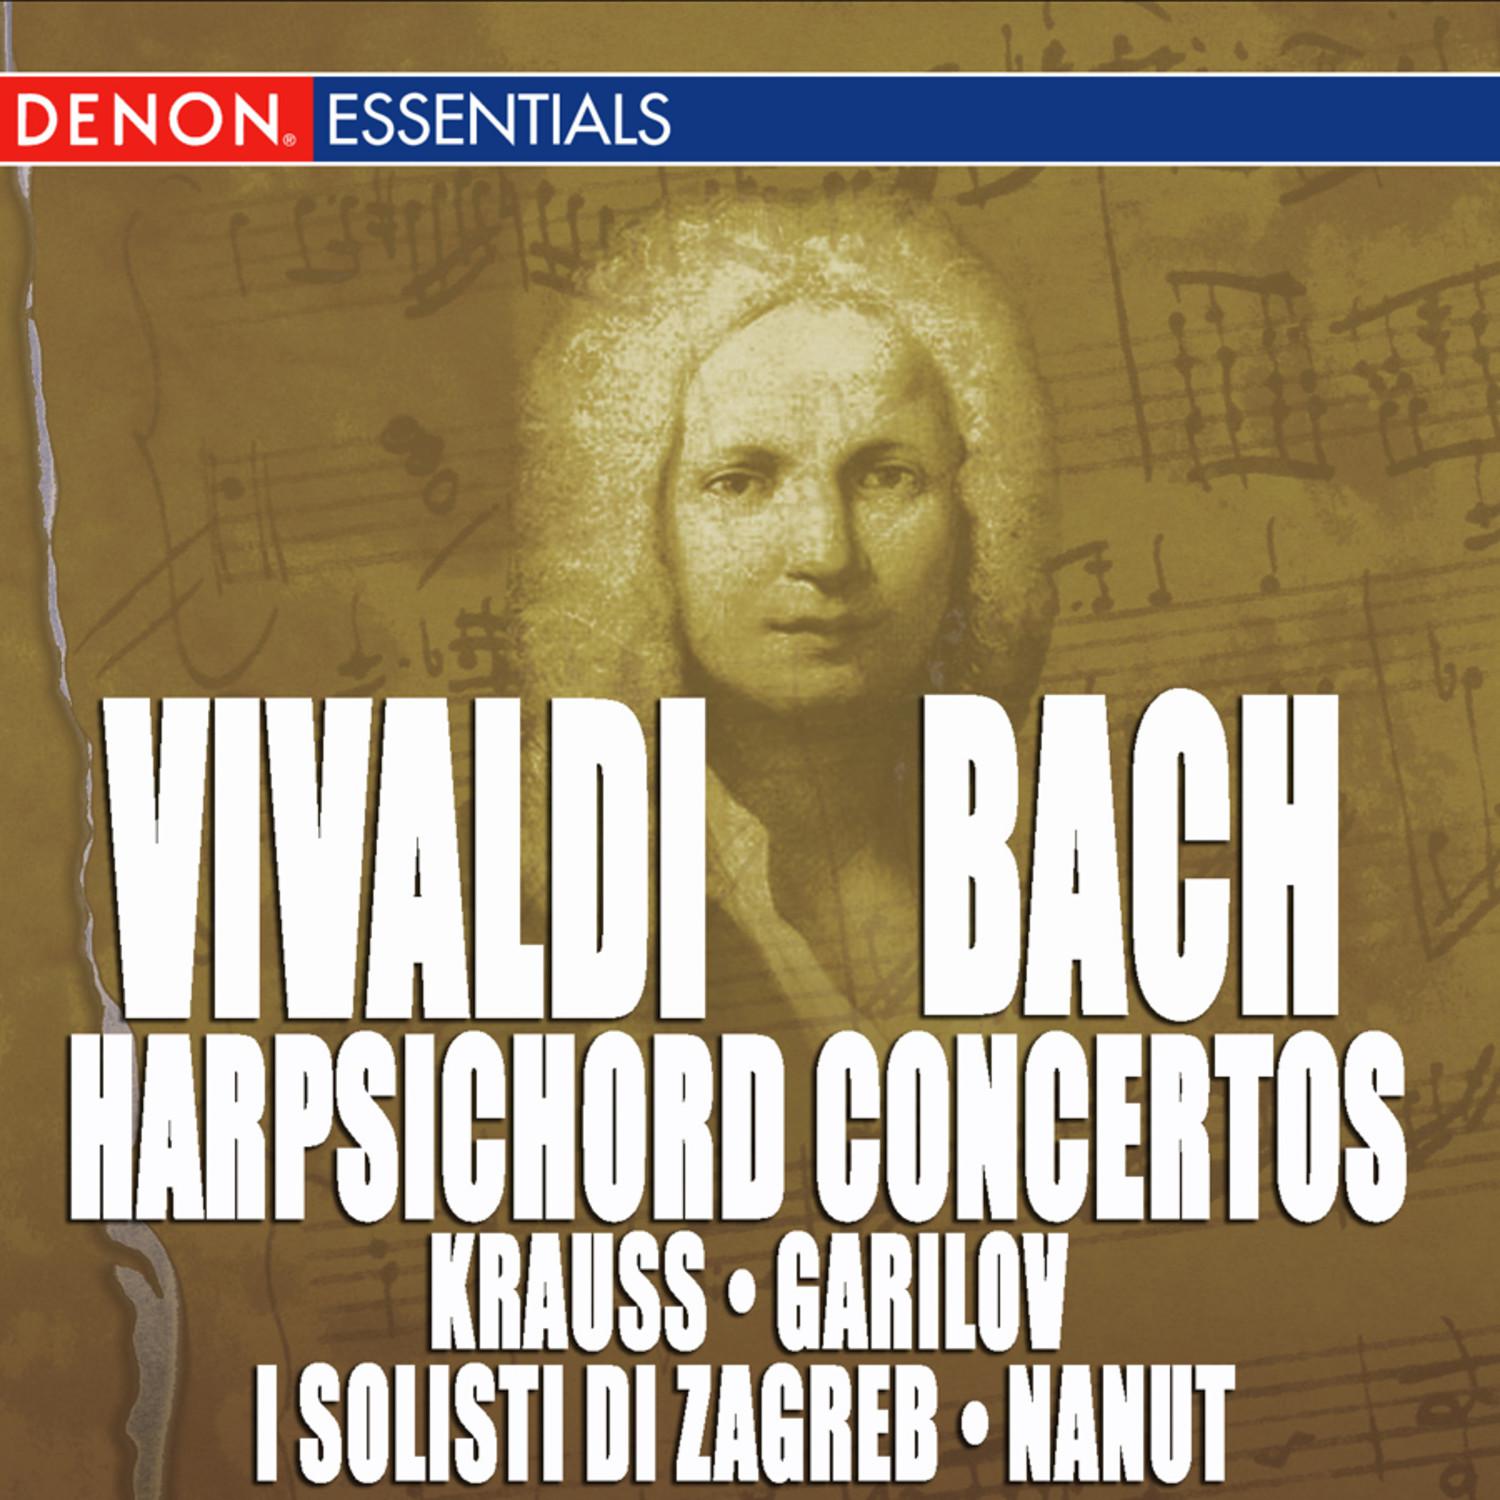 Vivaldi: Keyboard Concertos, RV 780 & 116 and Organ Concerto, RV 124 - Bach: Keyboard Concertos BWV 1052 & 1053